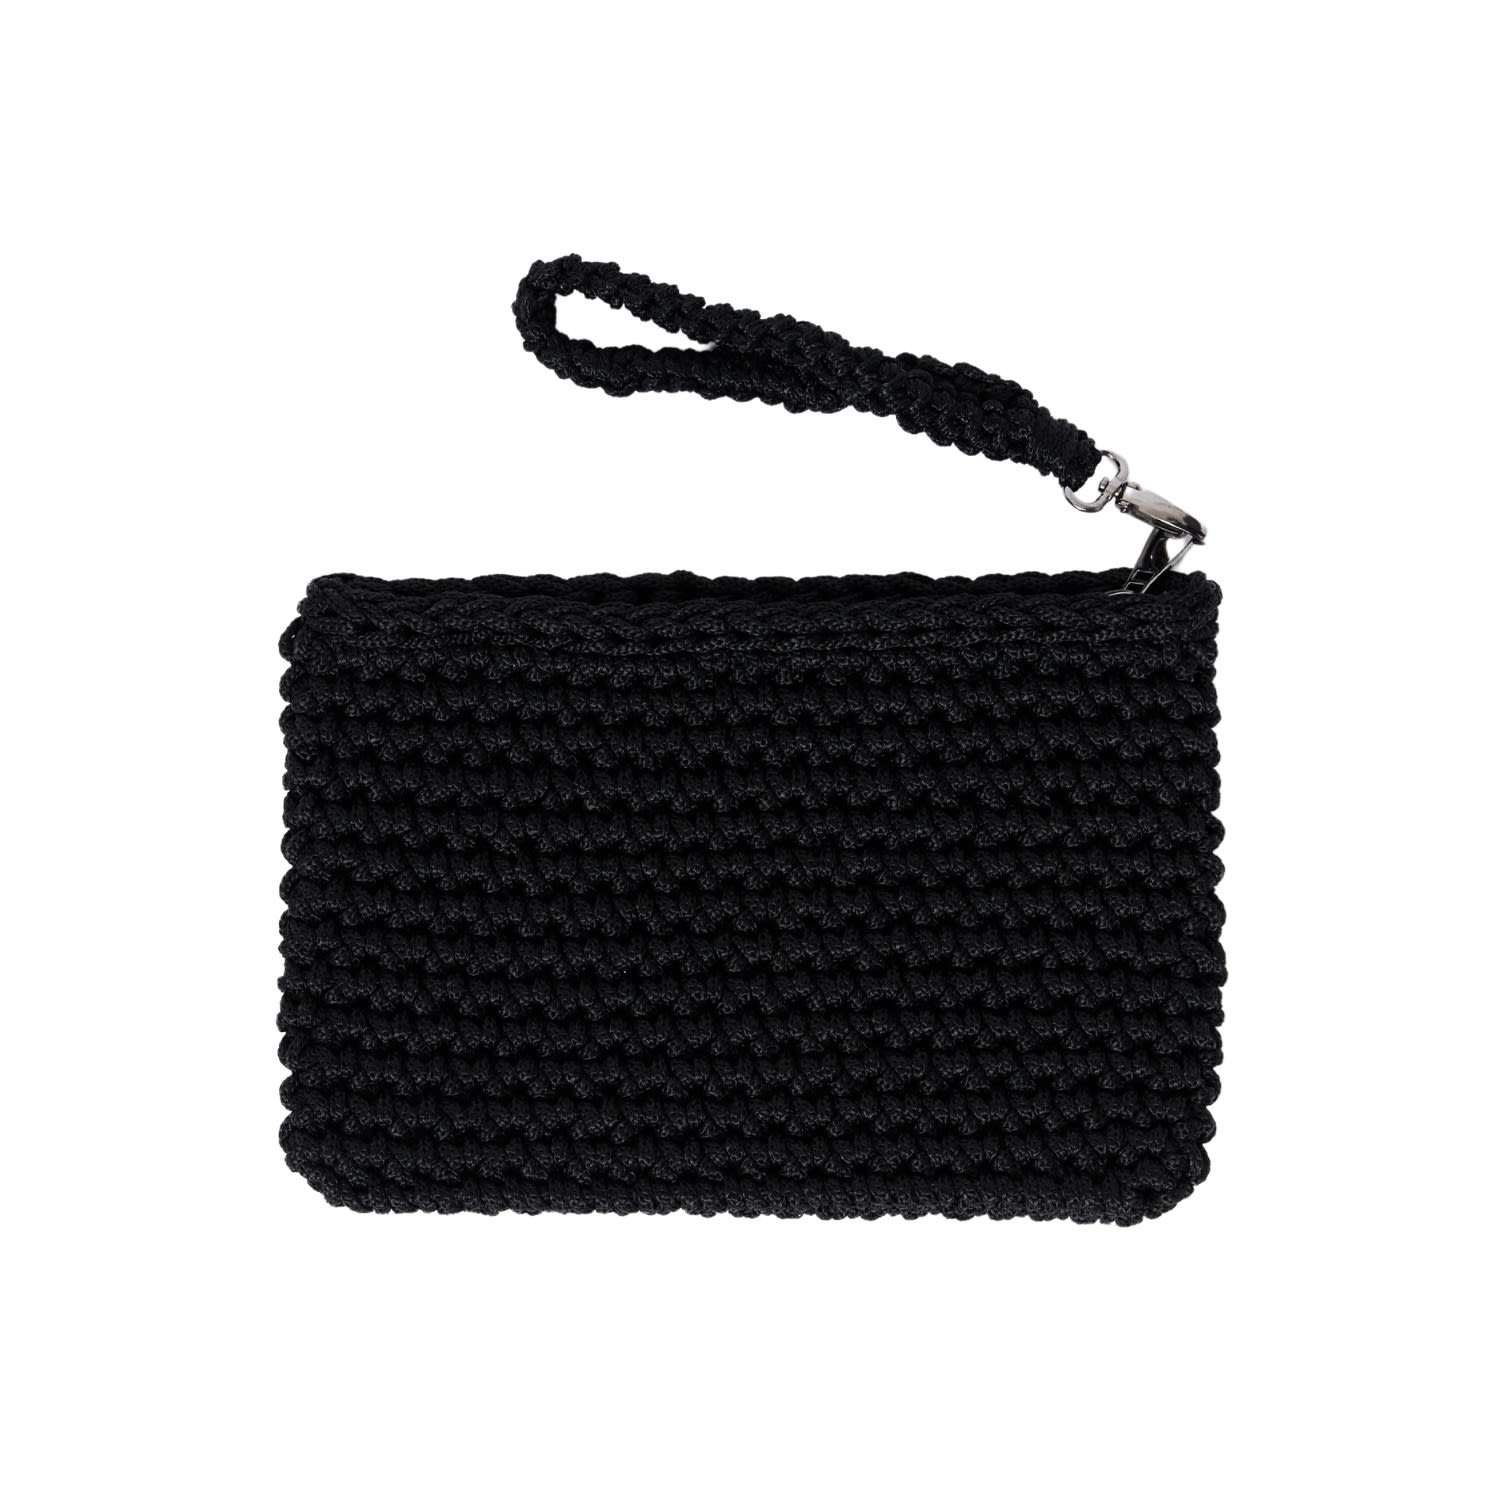 N'onat Women's Crete Handmade Crochet Clutch In Black